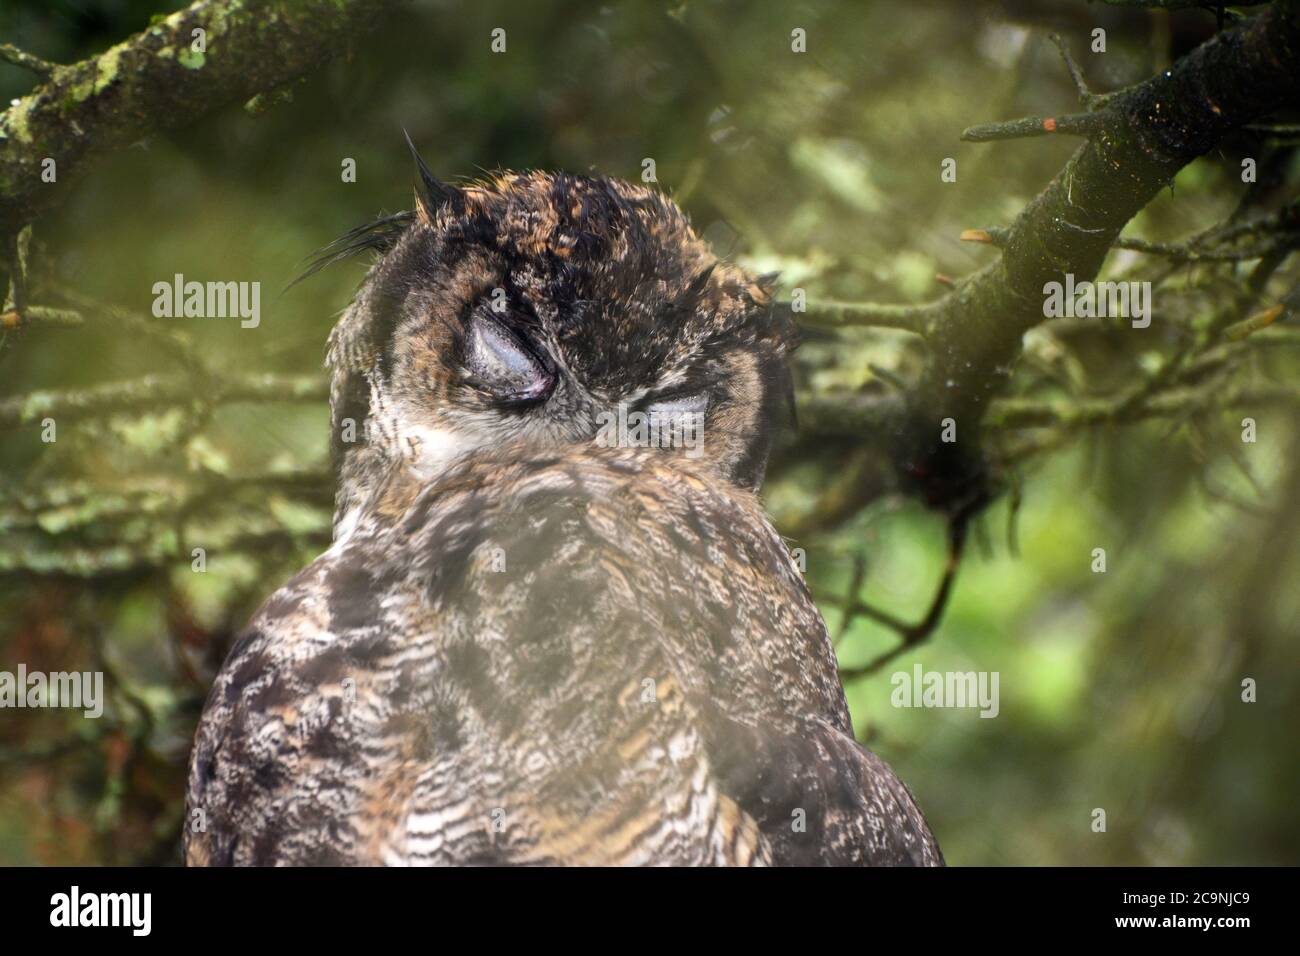 A sleepy Great Horned Owl Stock Photo